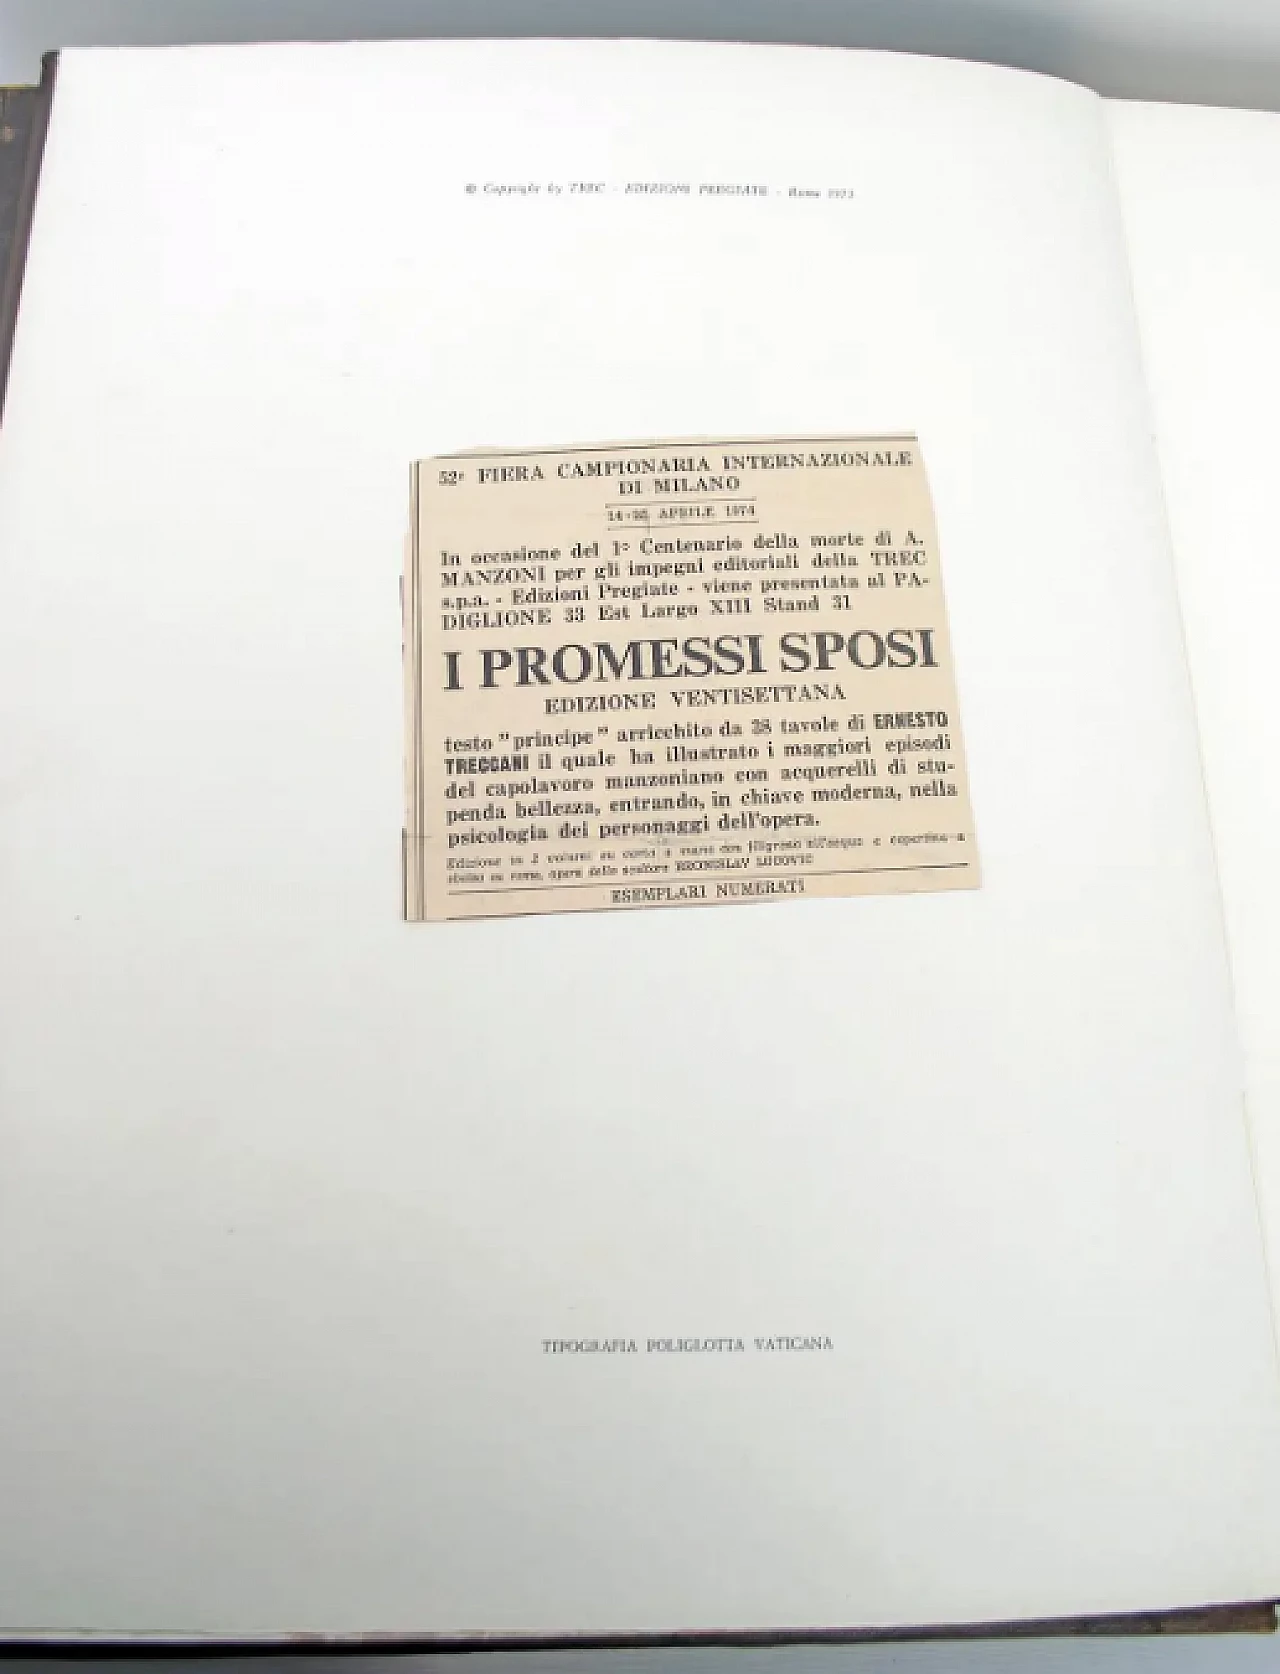 I Promessi Sposi by Alessandro Manzoni, Treccani edition, 1970s 10